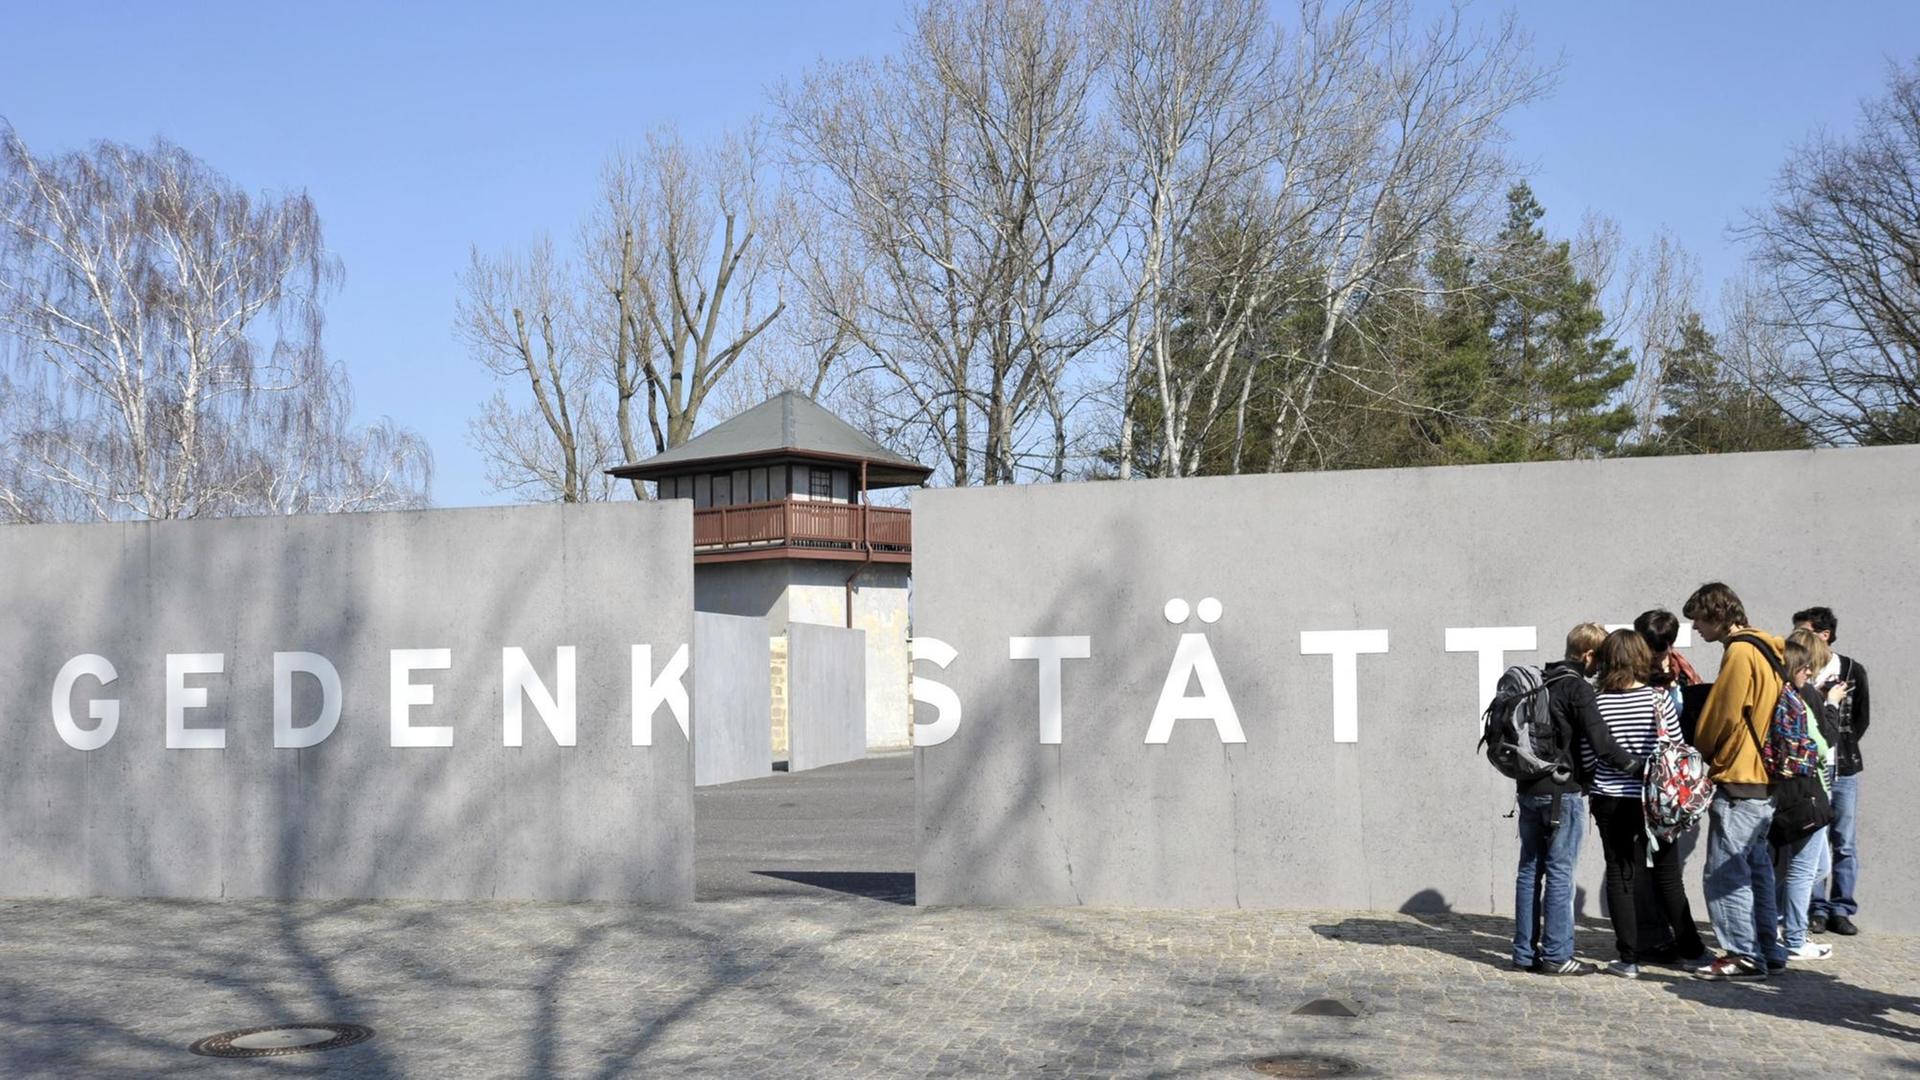 Schulklasse an der Gedenkstätte, Konzentrationslager Sachsenhausen, Oranienburg, Brandenburg, Deutschland, Europa.